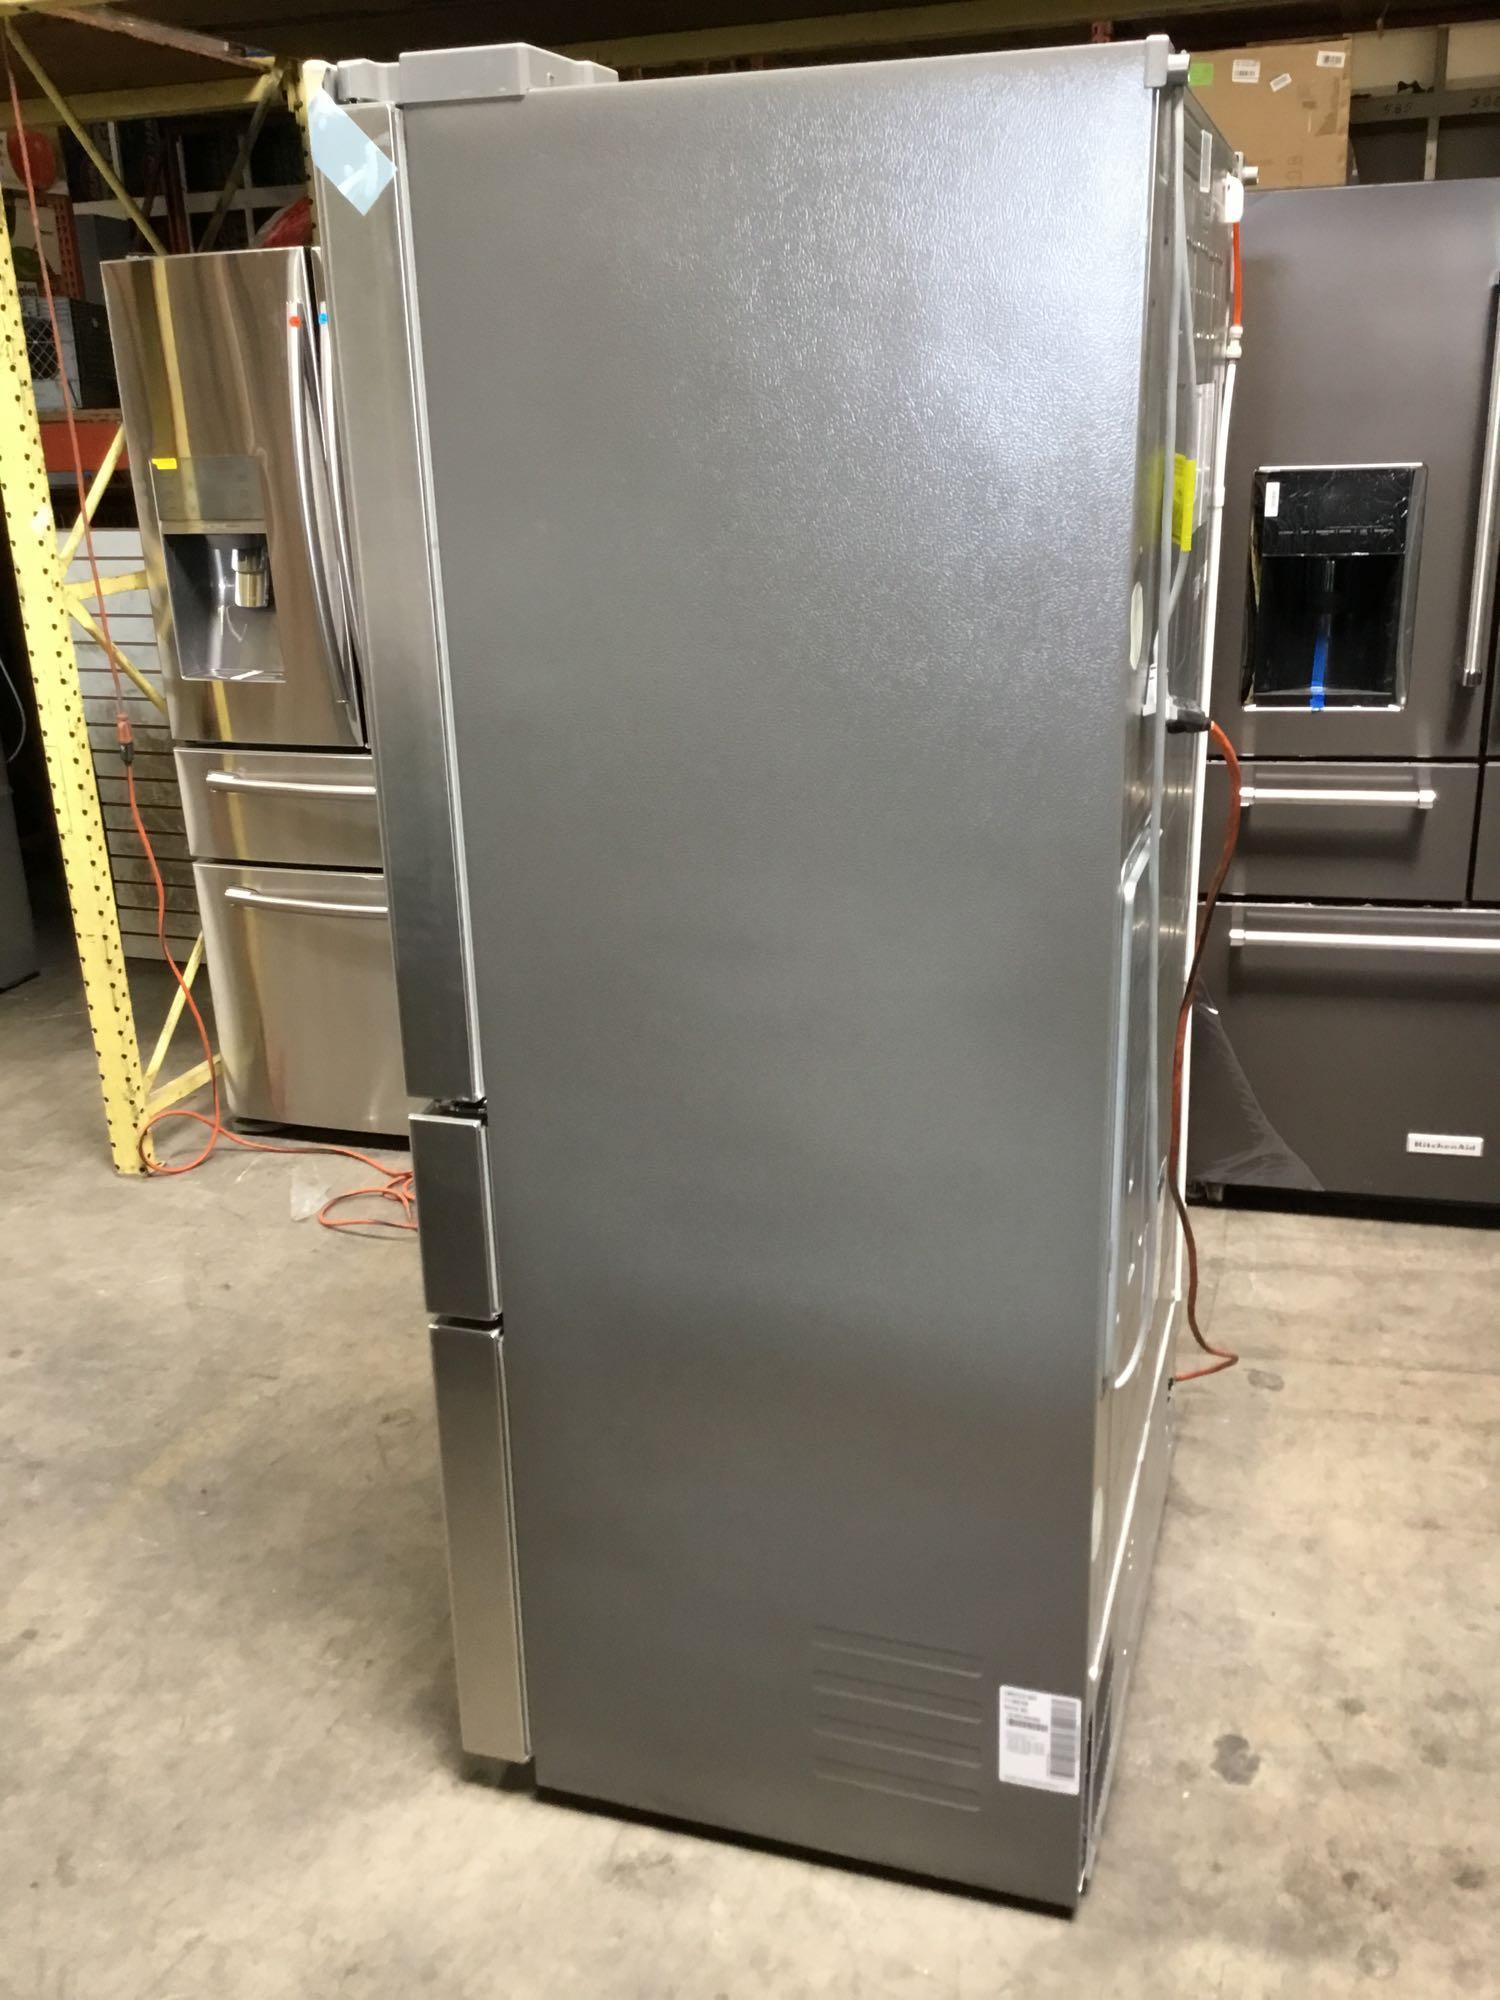 LG 22.7 Cu. Ft. Counter-Depth 4-Door French Door Refrigerator